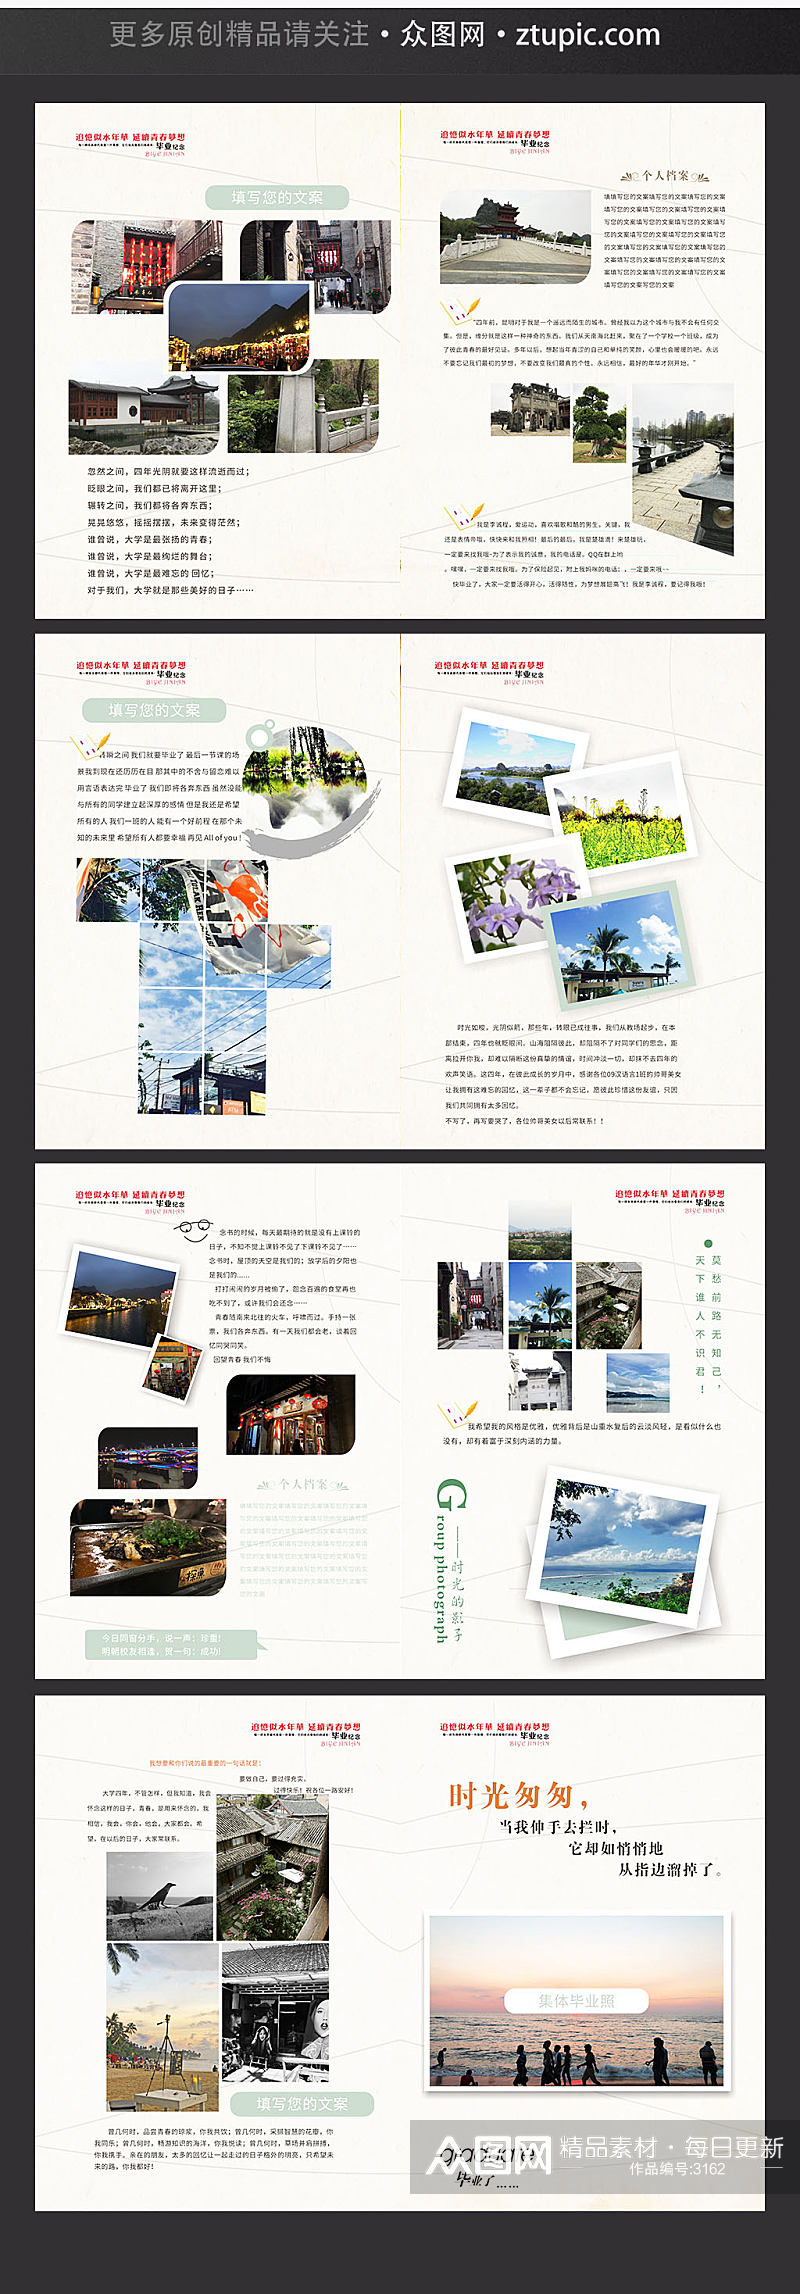 浅色系企业文化画册封面设计素材